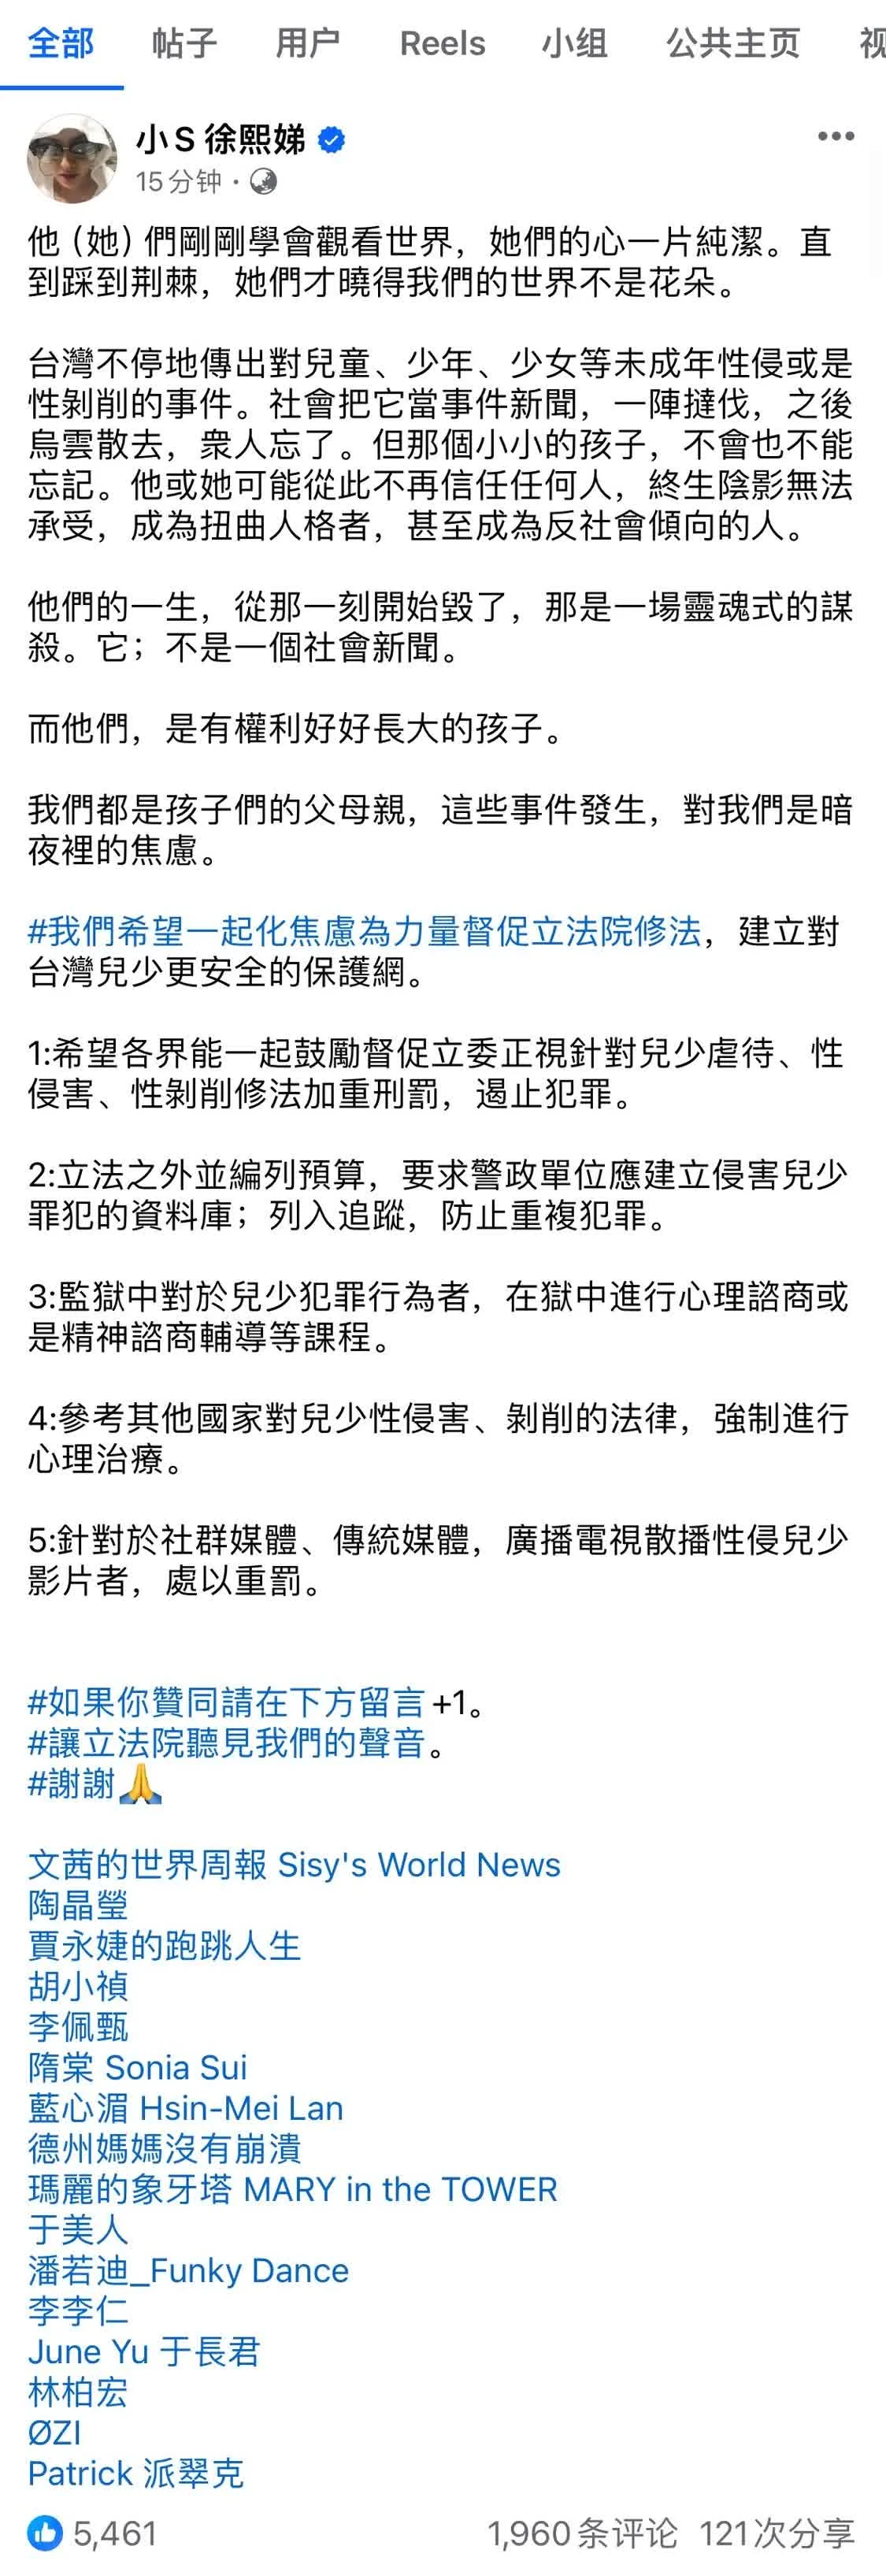 台湾众星为未成年人权益发声 联合呼吁修法封面图